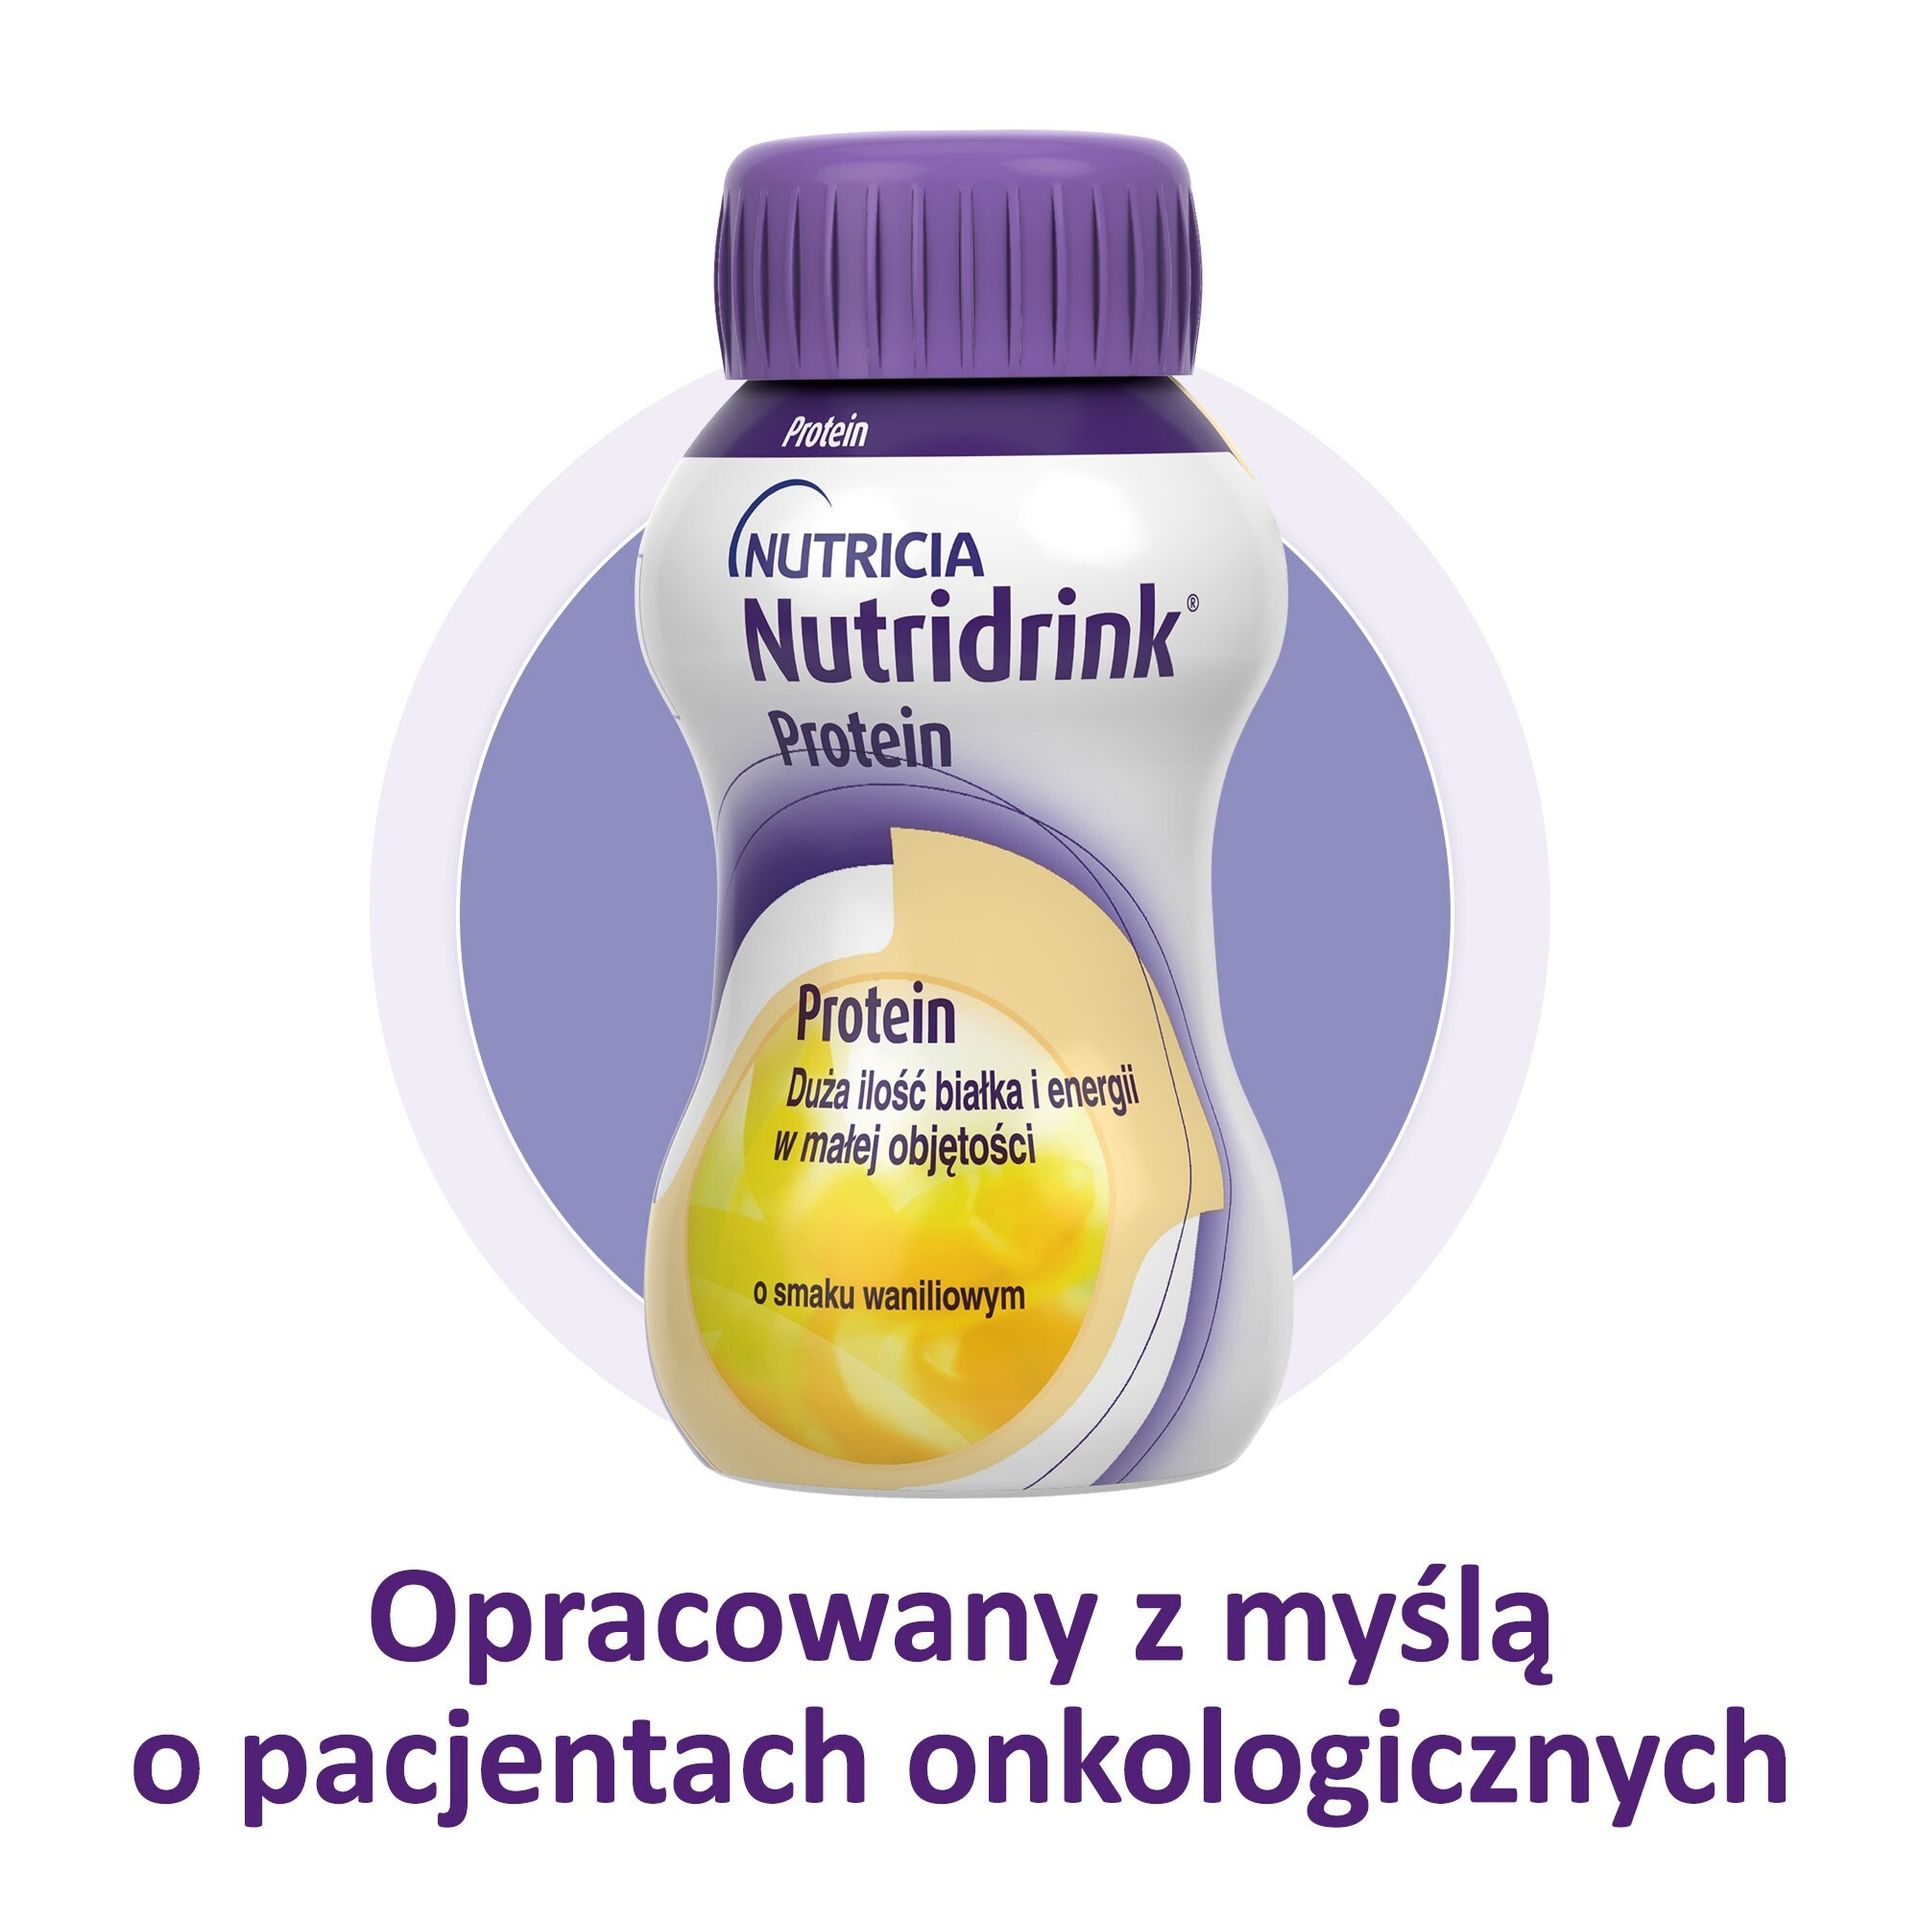 NUTRICIA POLSKA SP. Z O.O. Nutridrink Protein o smaku waniliowym 4x125ml (3001281)